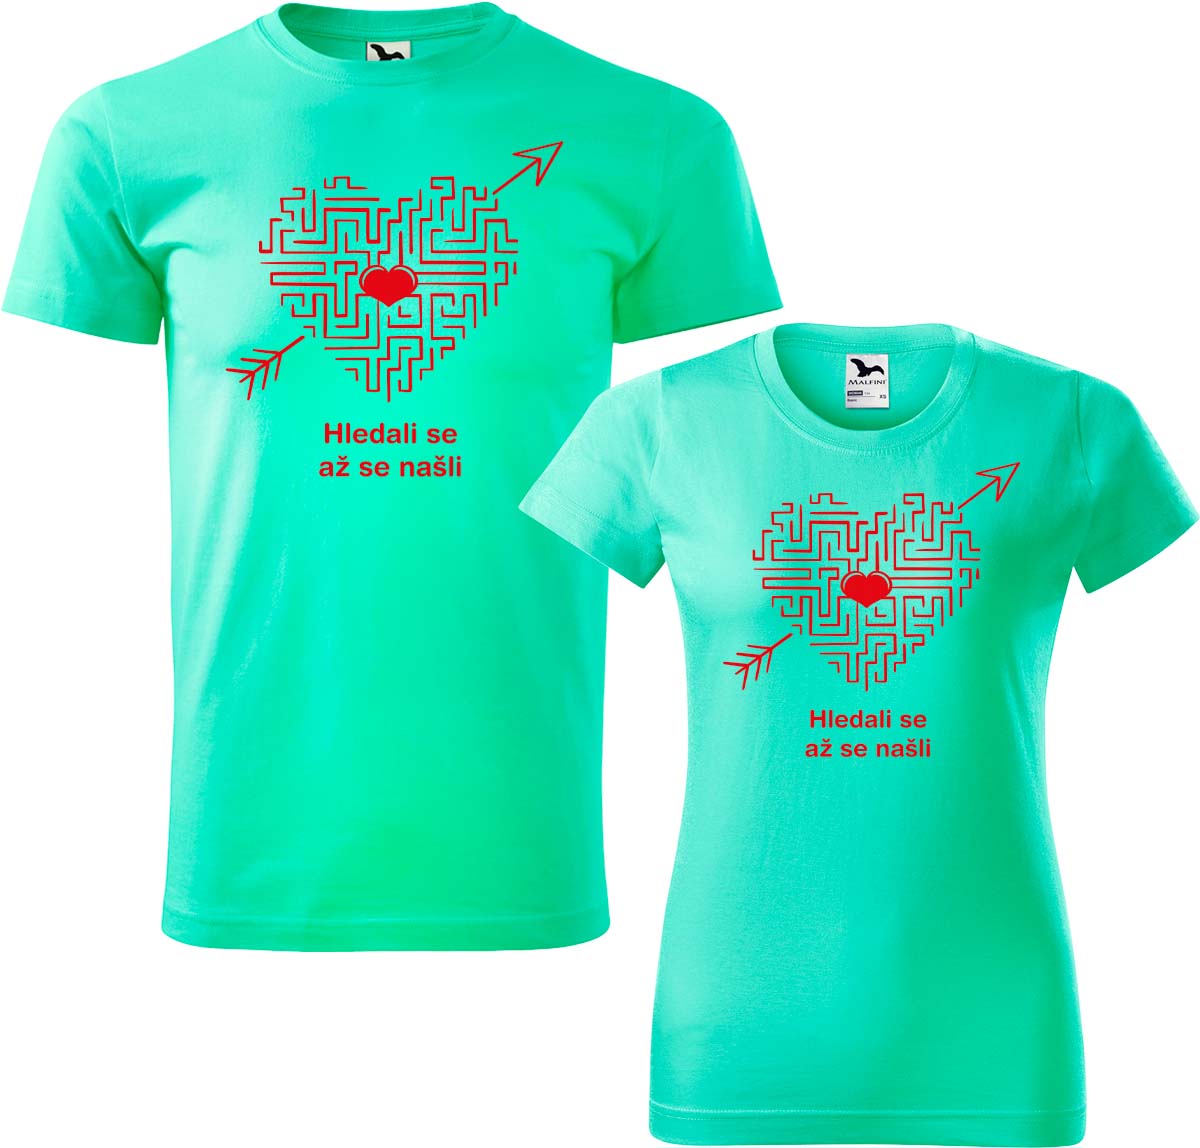 Trička pro páry - Hledali se, až se našli (srdce) Barva: Mátová (95), Velikost dámské tričko: XL, Velikost pánské tričko: XL